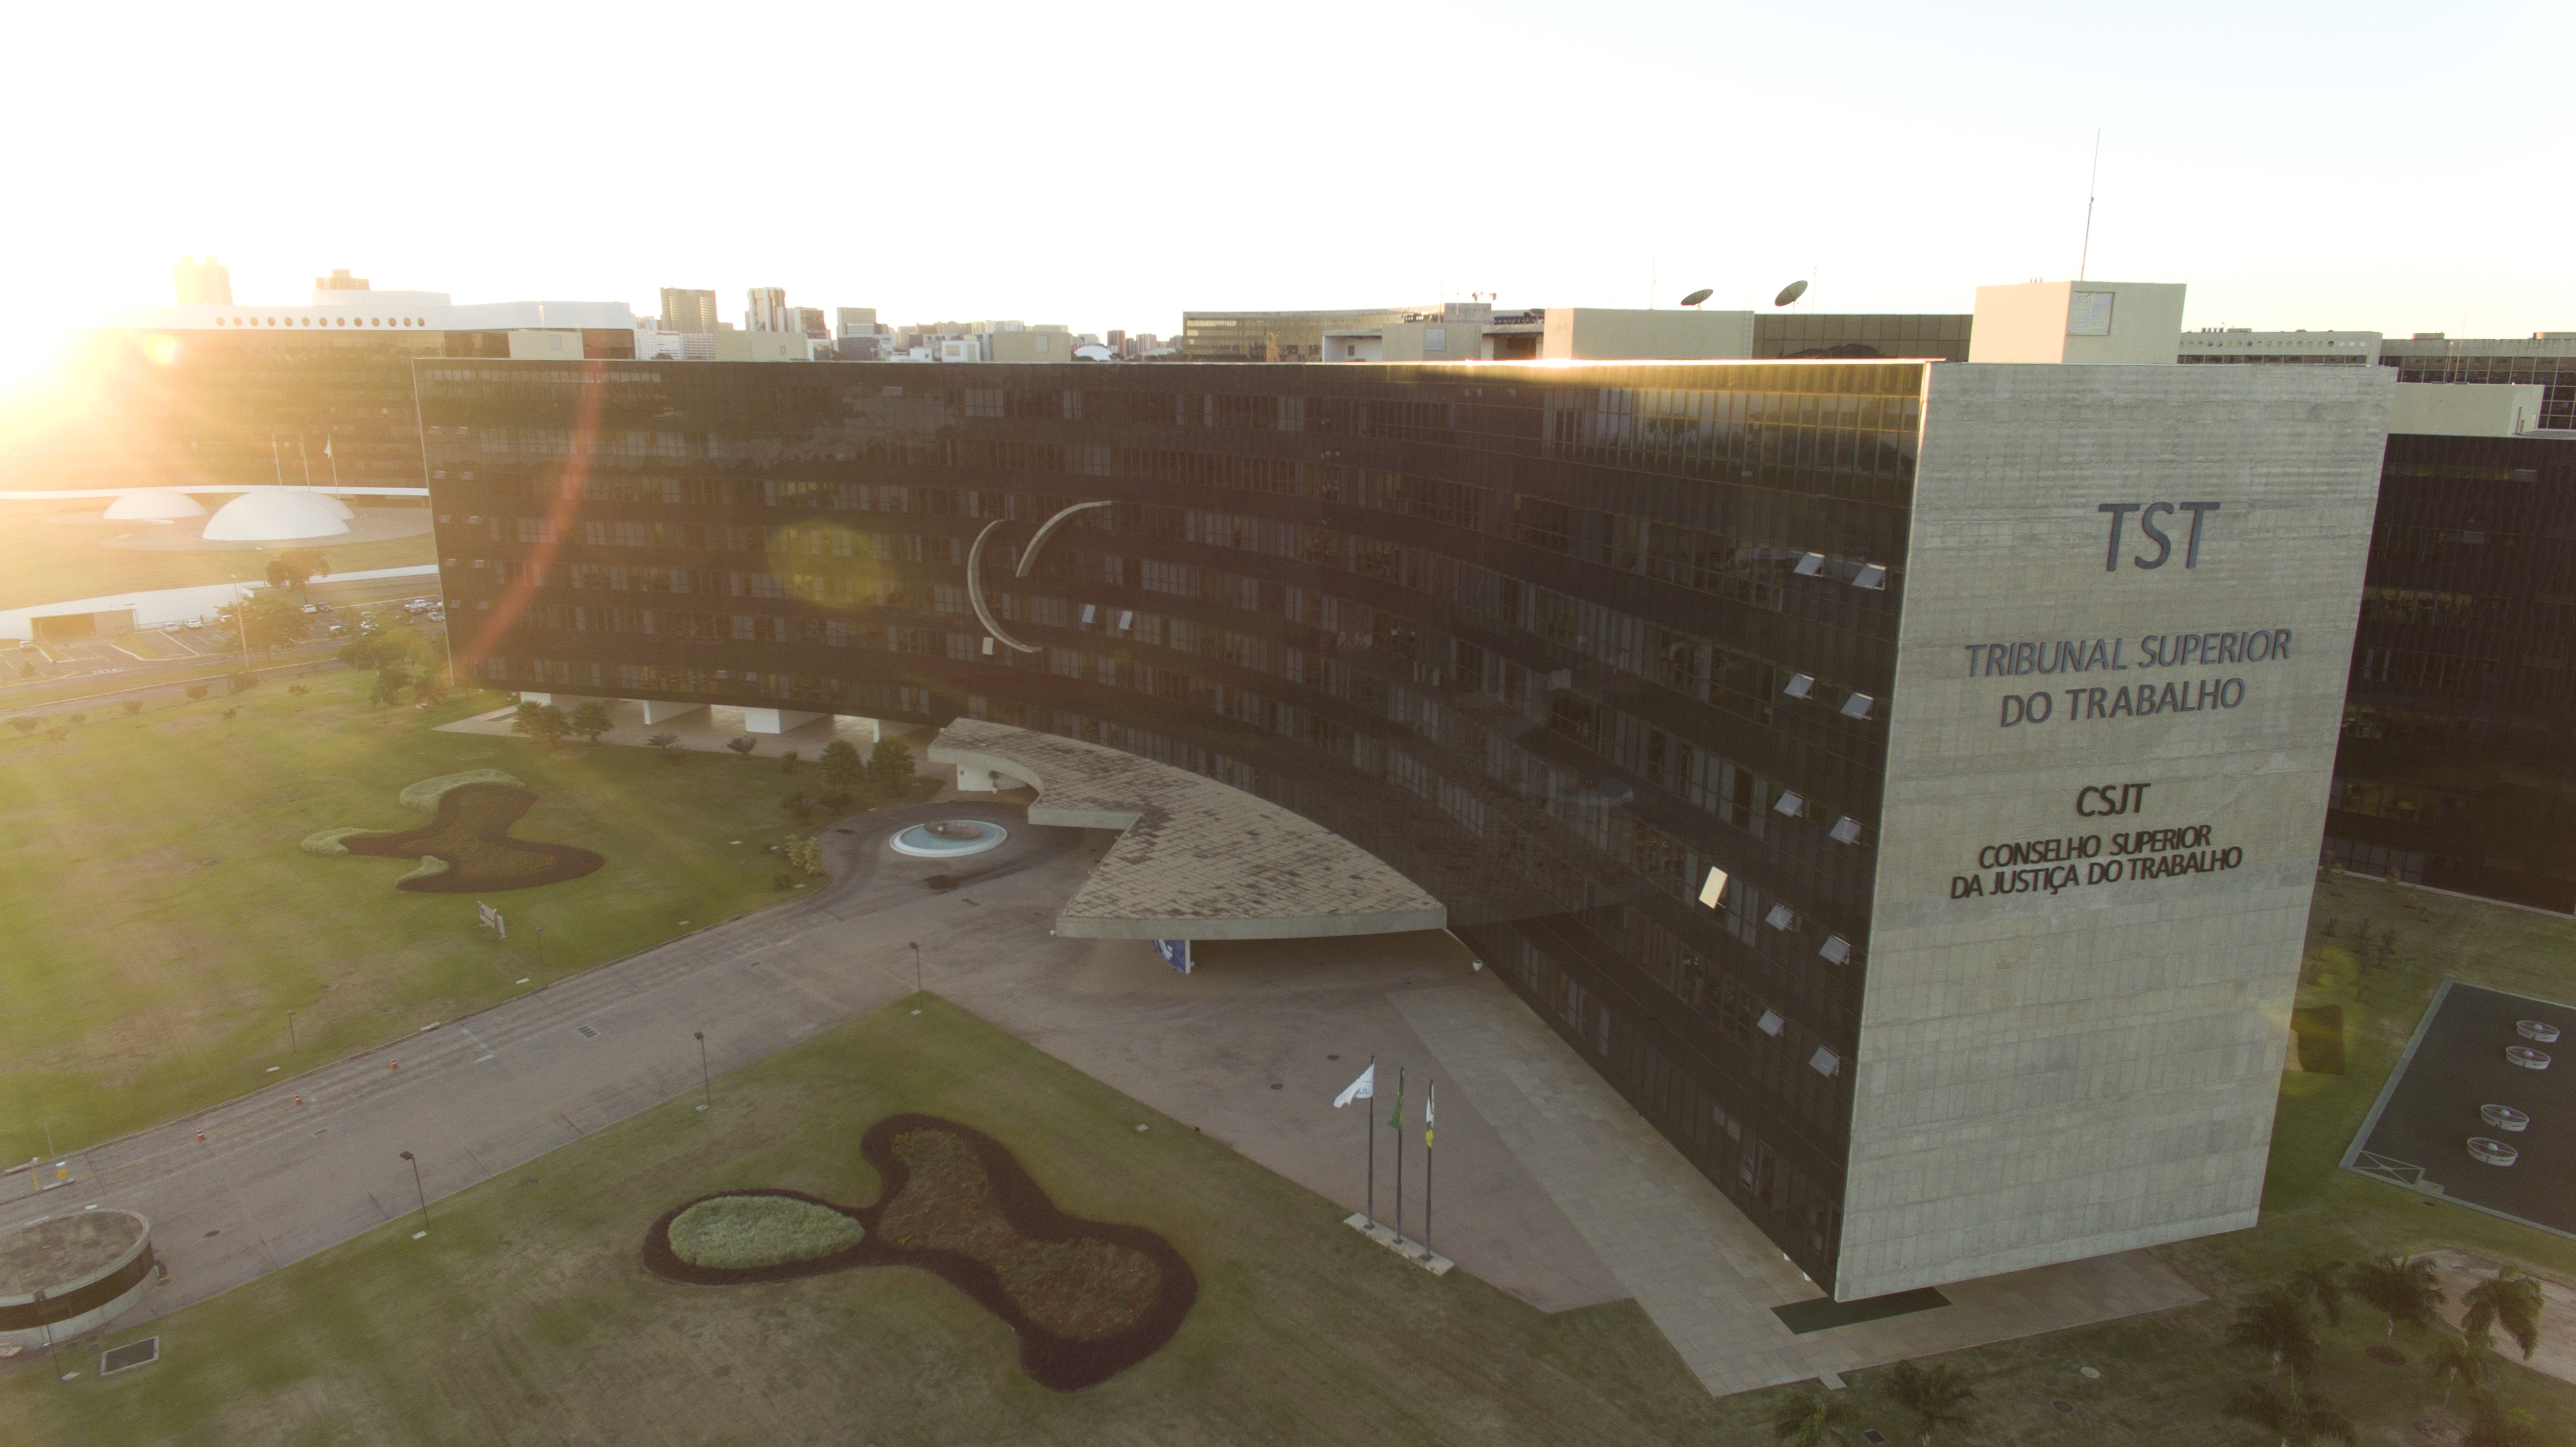 Imagem aérea da fachada lateral do prédio do TST e do CSJT.